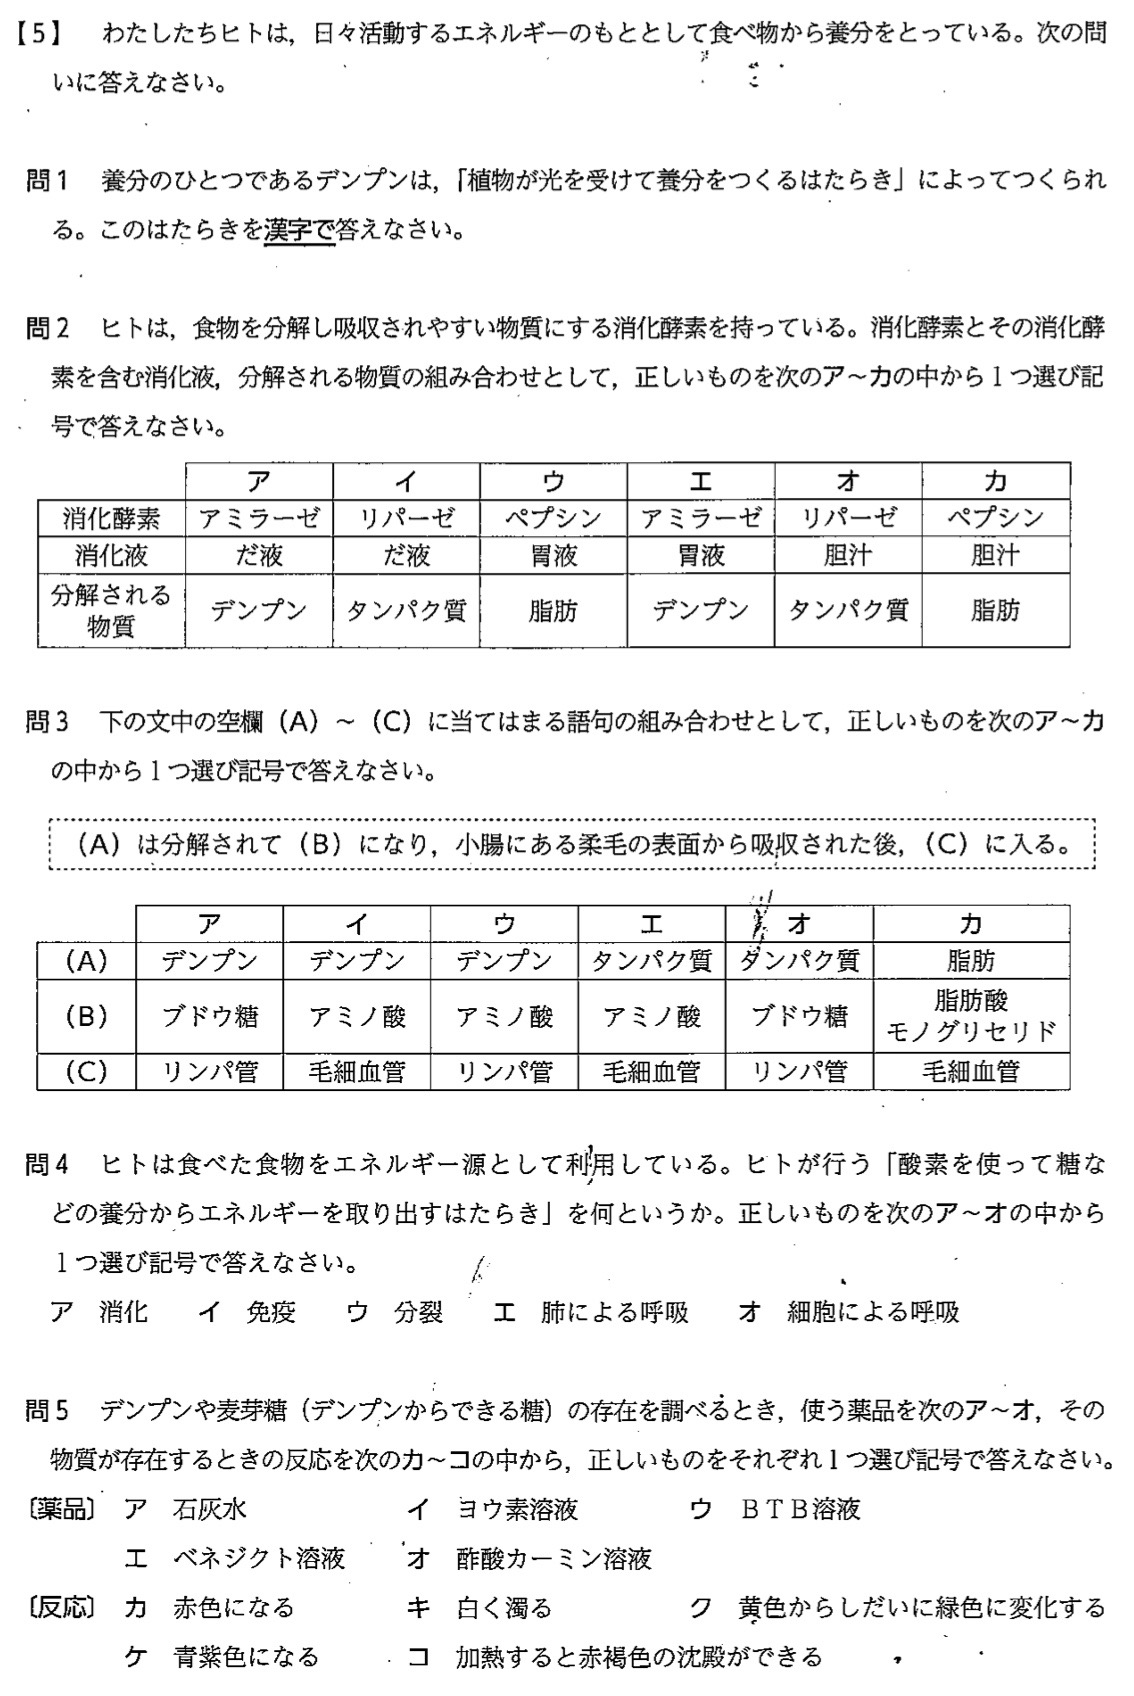 沖縄県公立高校入試理科2022年(令和4年)過去問題